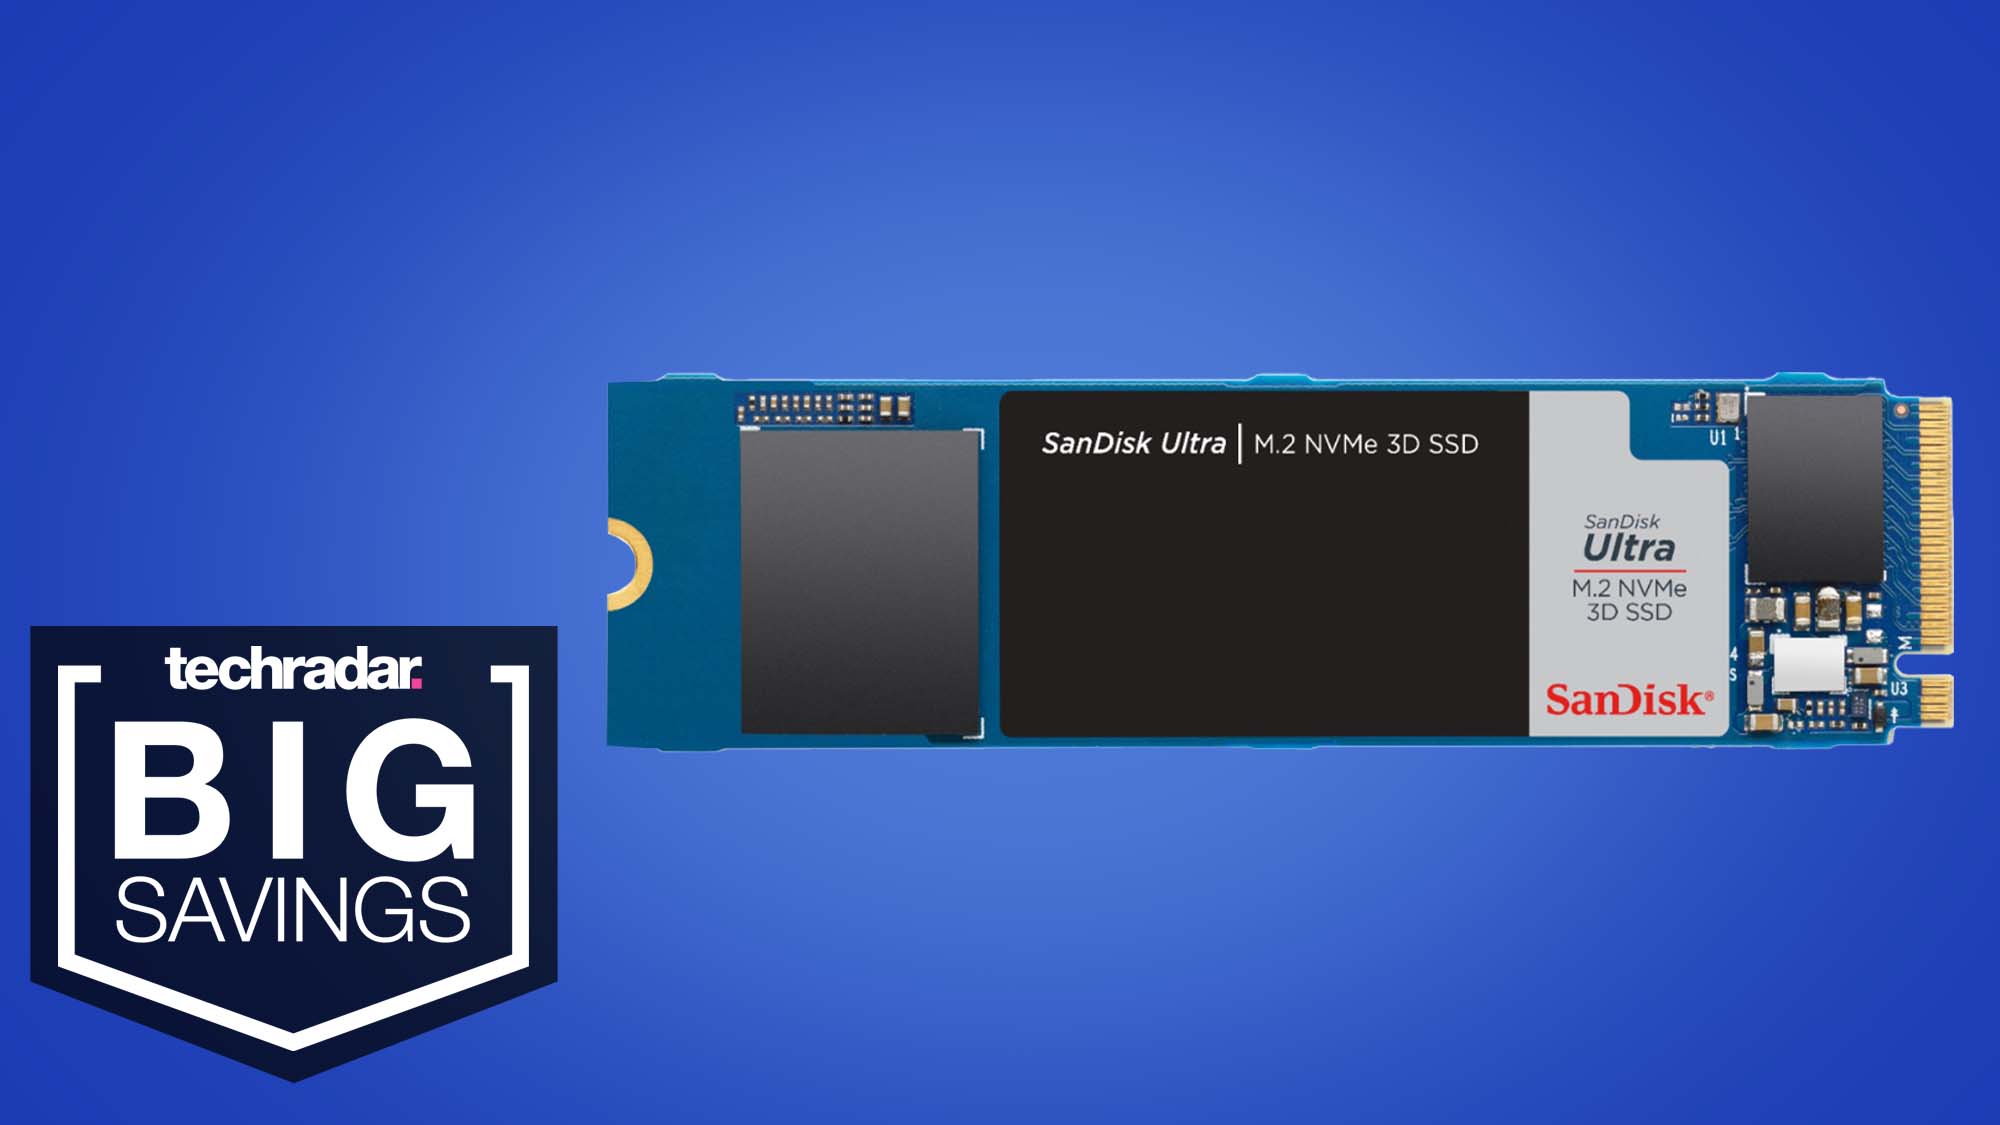 See Sandisk Nvme Ssd pakkumine on liiga hea, et loobuda – isegi kui te ei vaja uut SSD-d